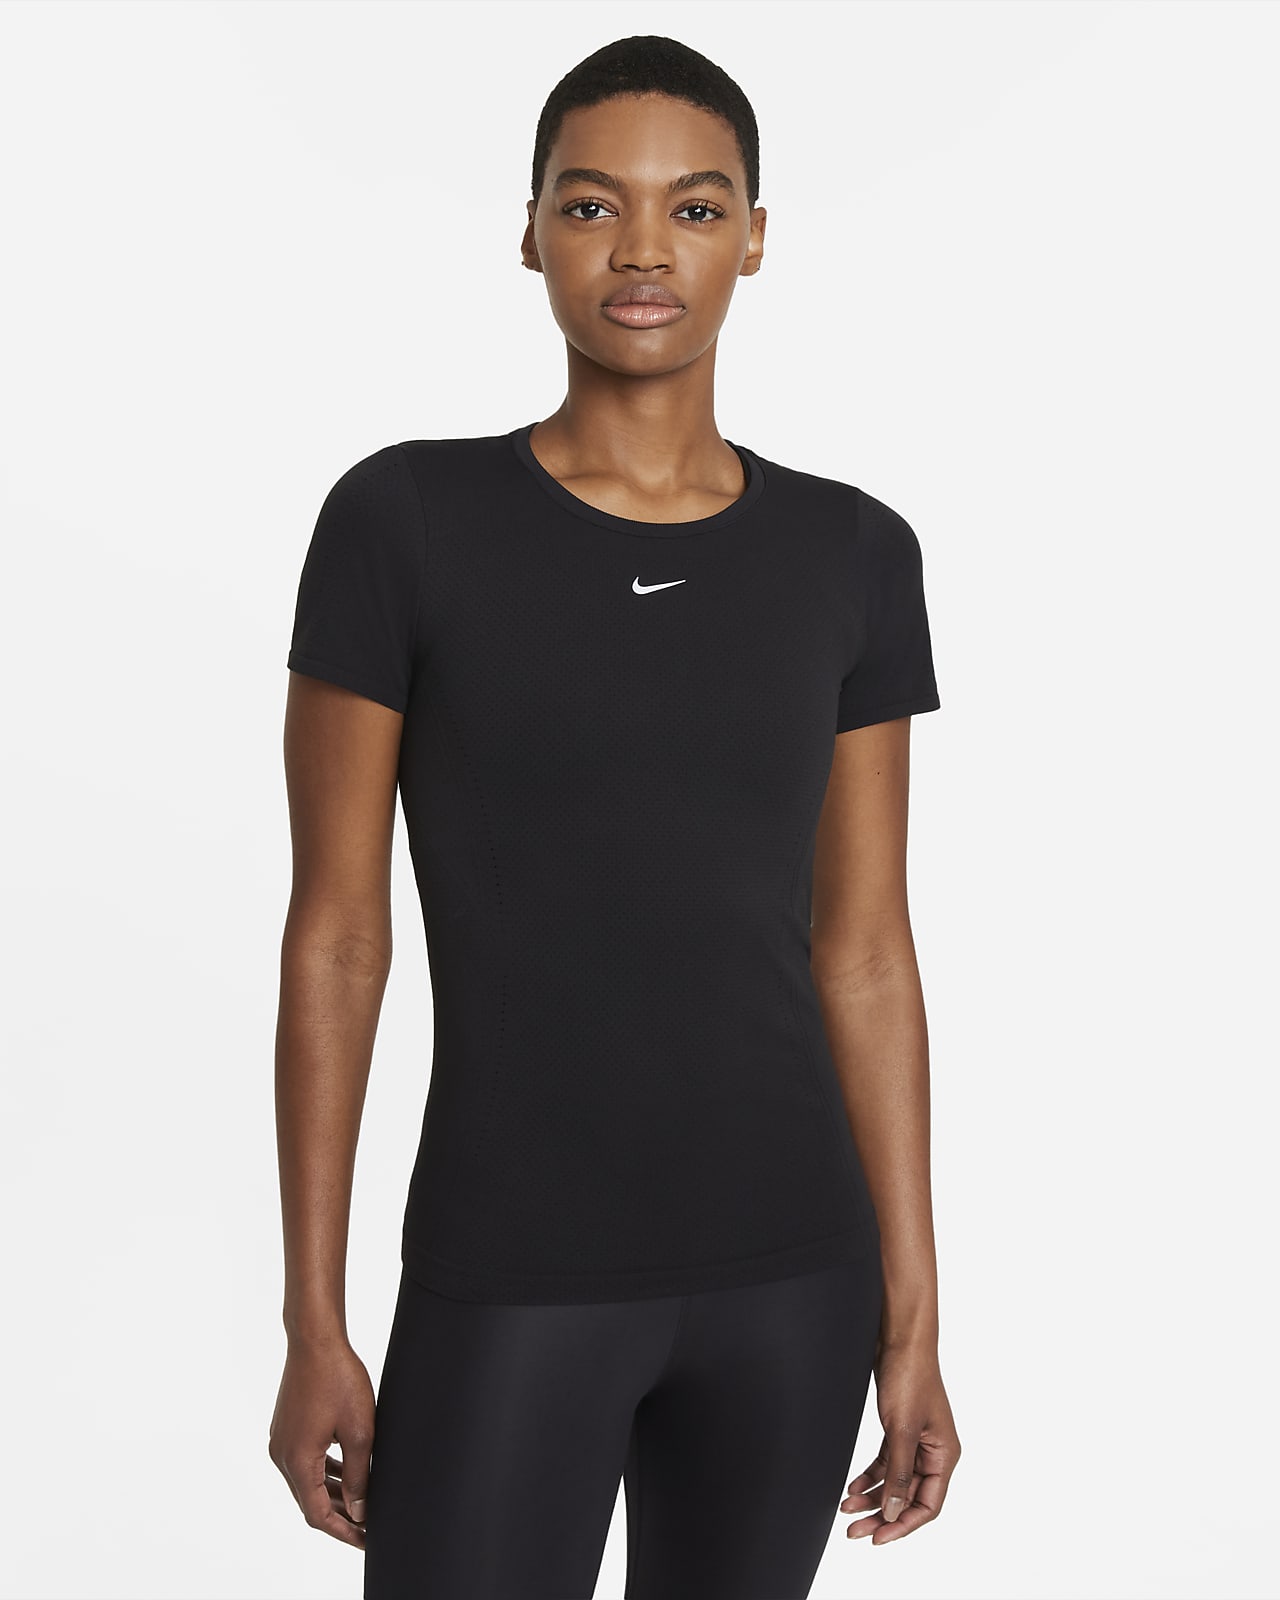 Nike Dri-FIT ADV Aura Kurzarmshirt in schmaler Passform für Damen